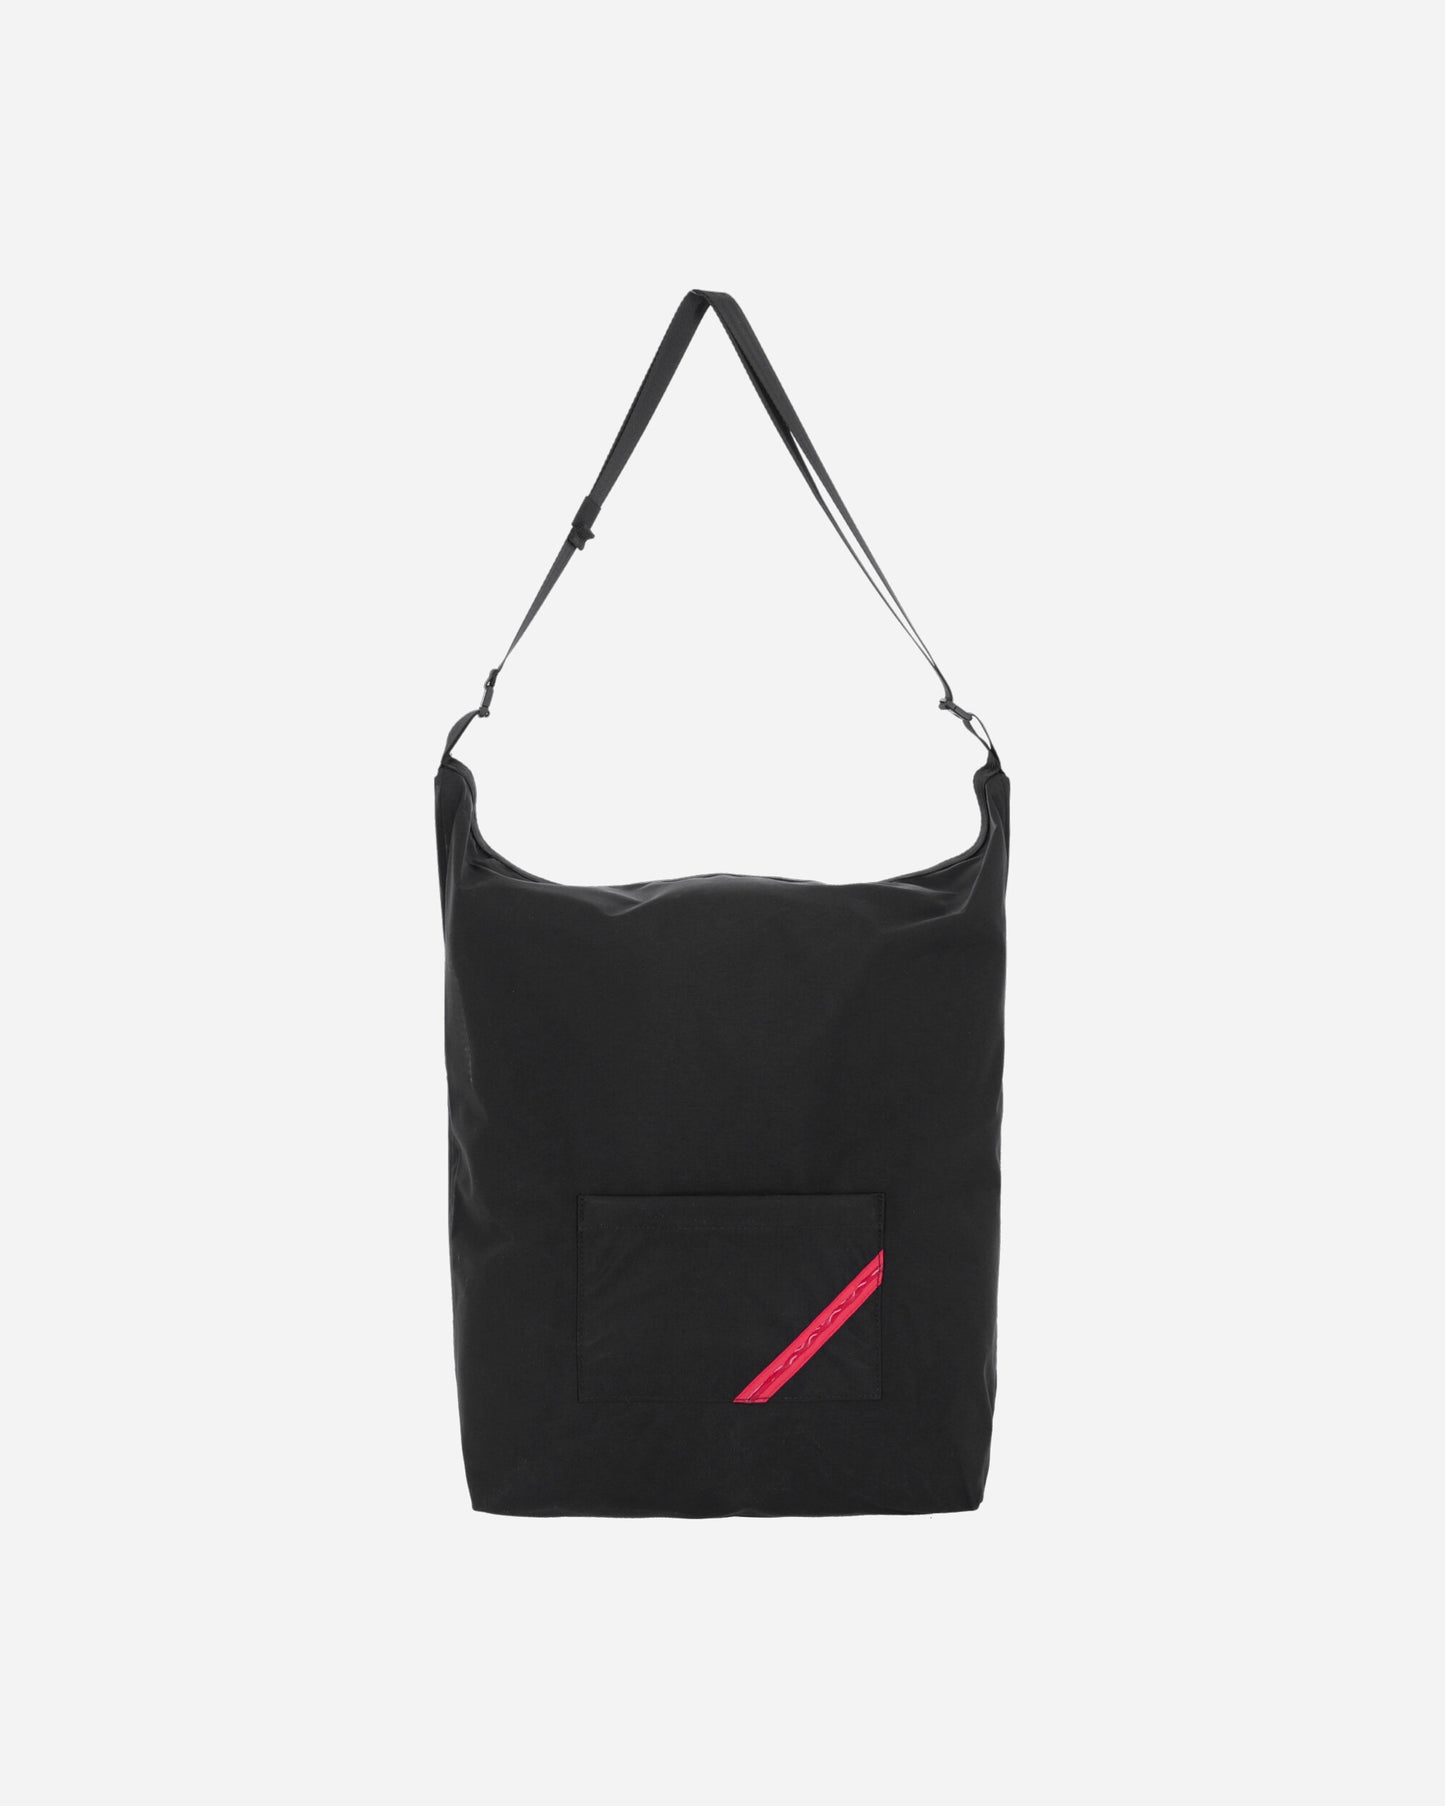 Phingerin Improvisation Bag Black Bags and Backpacks Shoulder Bags PD-241-BG-011 B